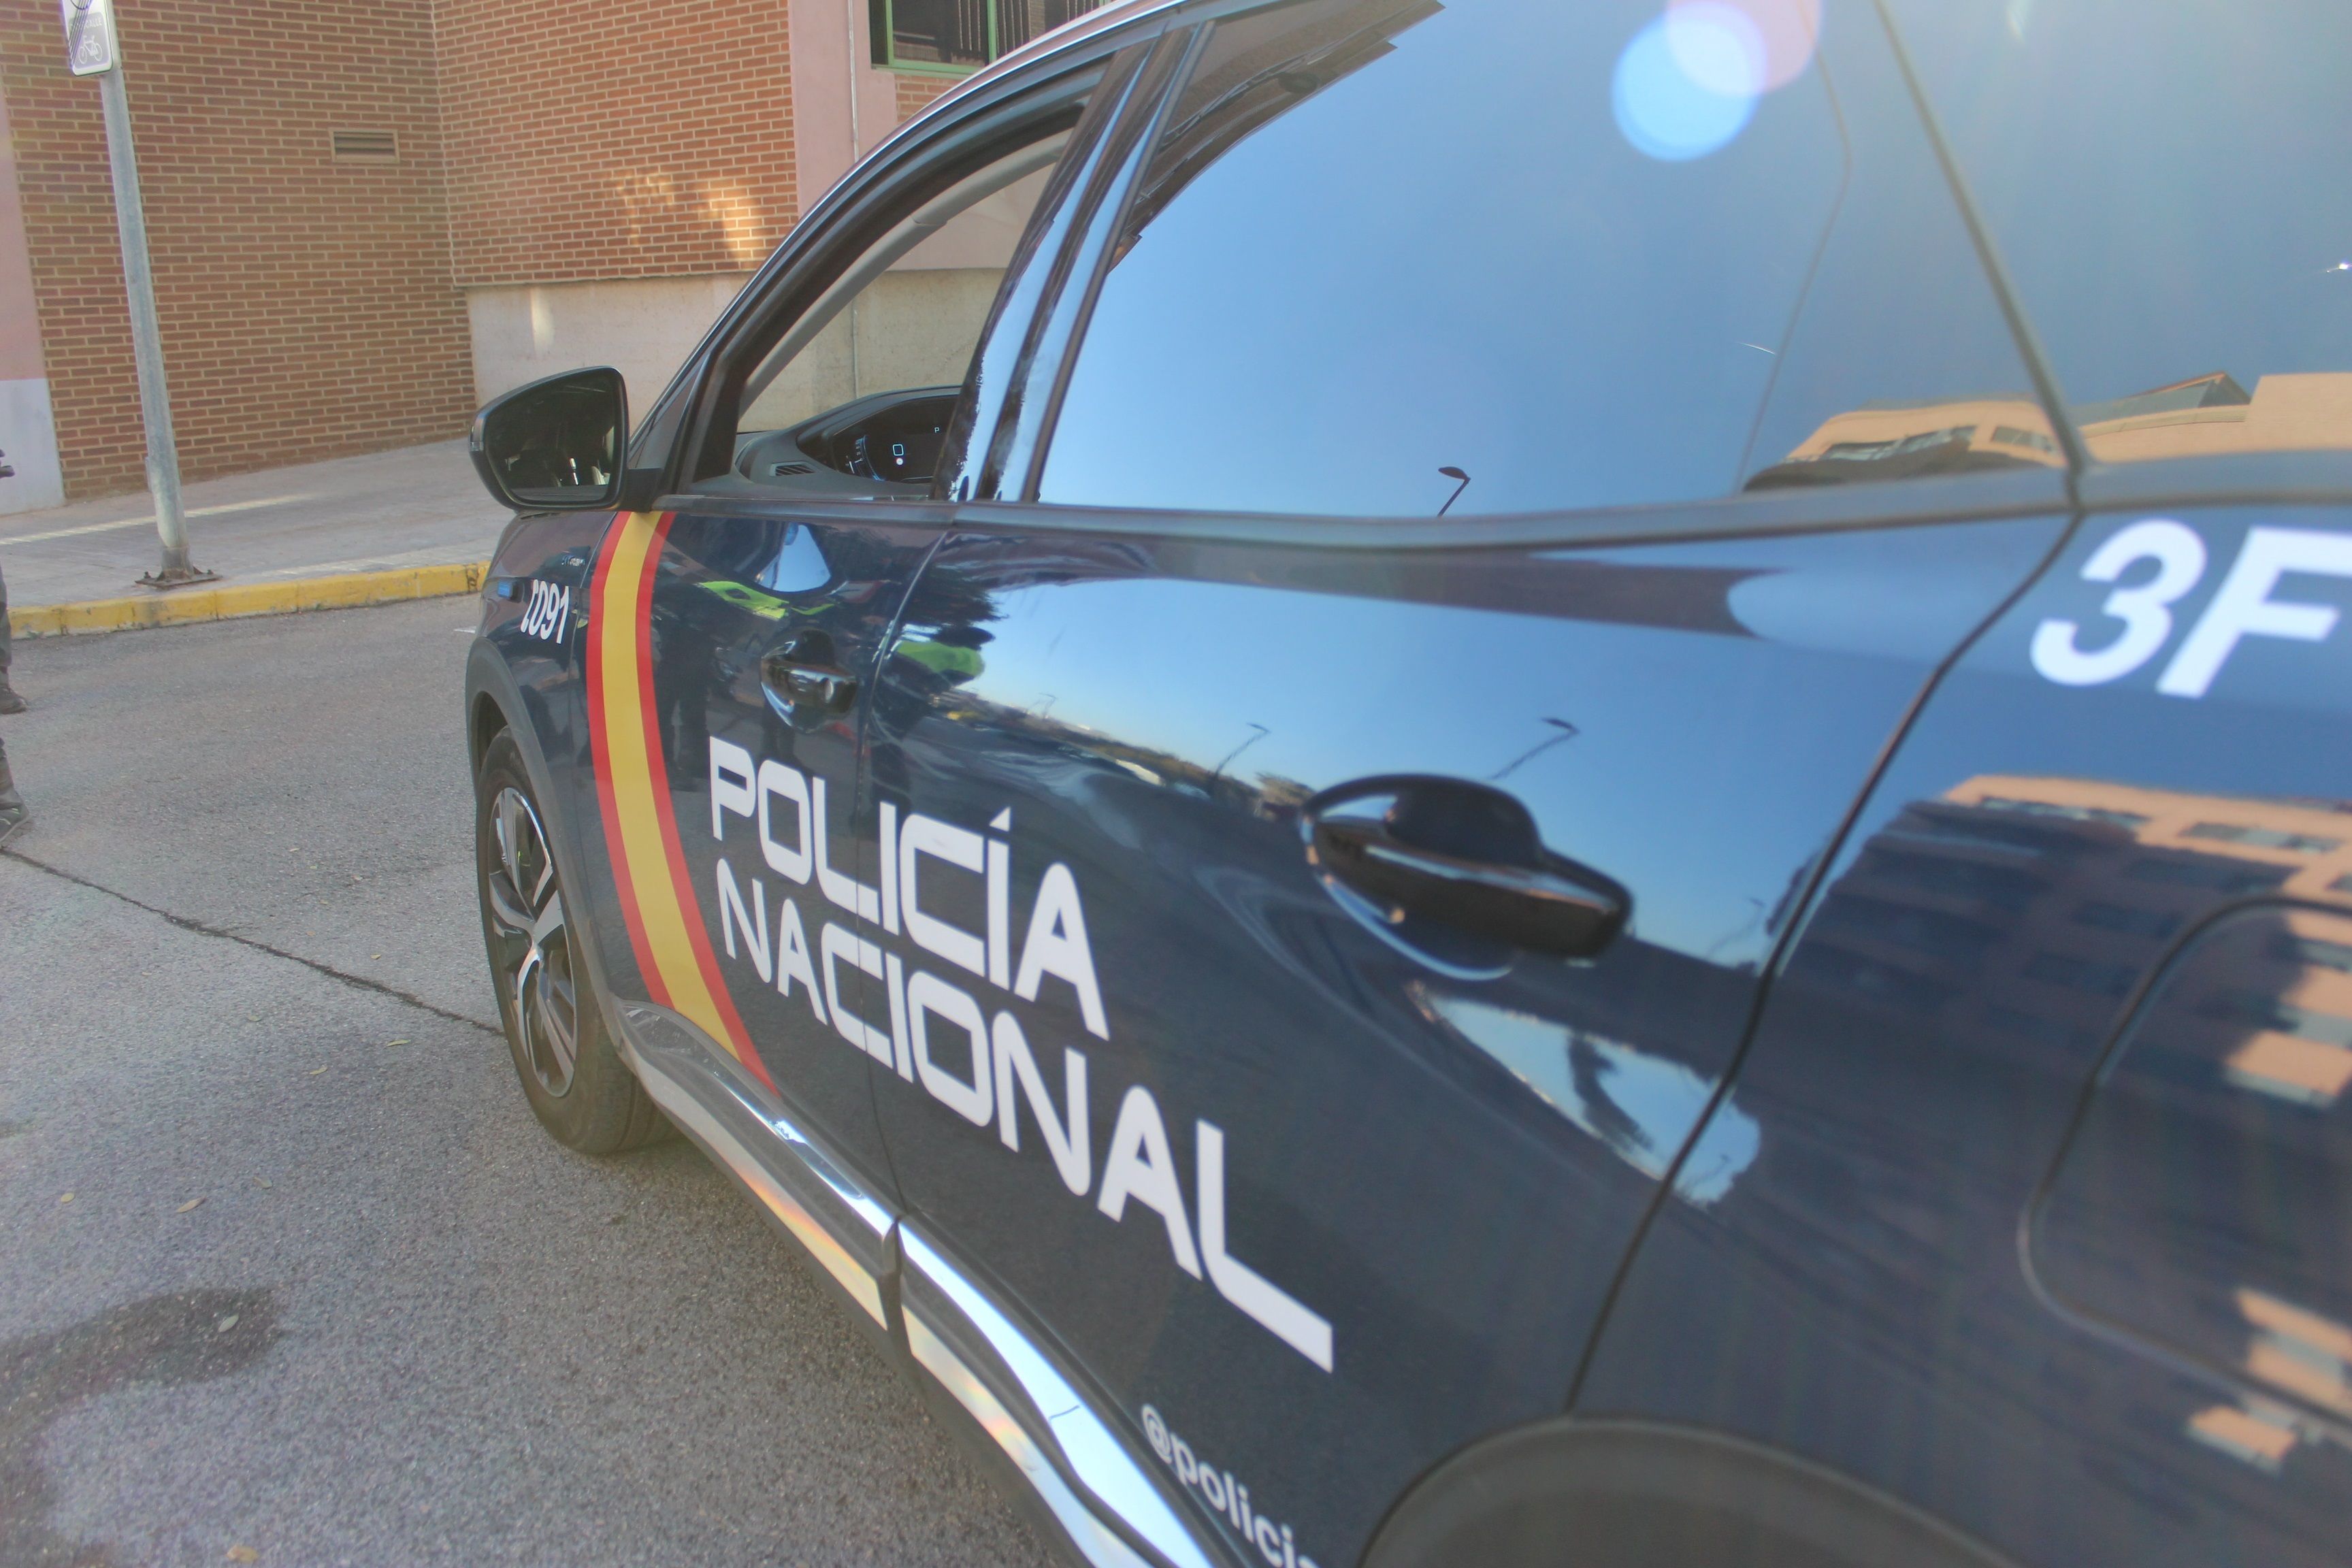 Persecución con disparos en el centro de Jaén